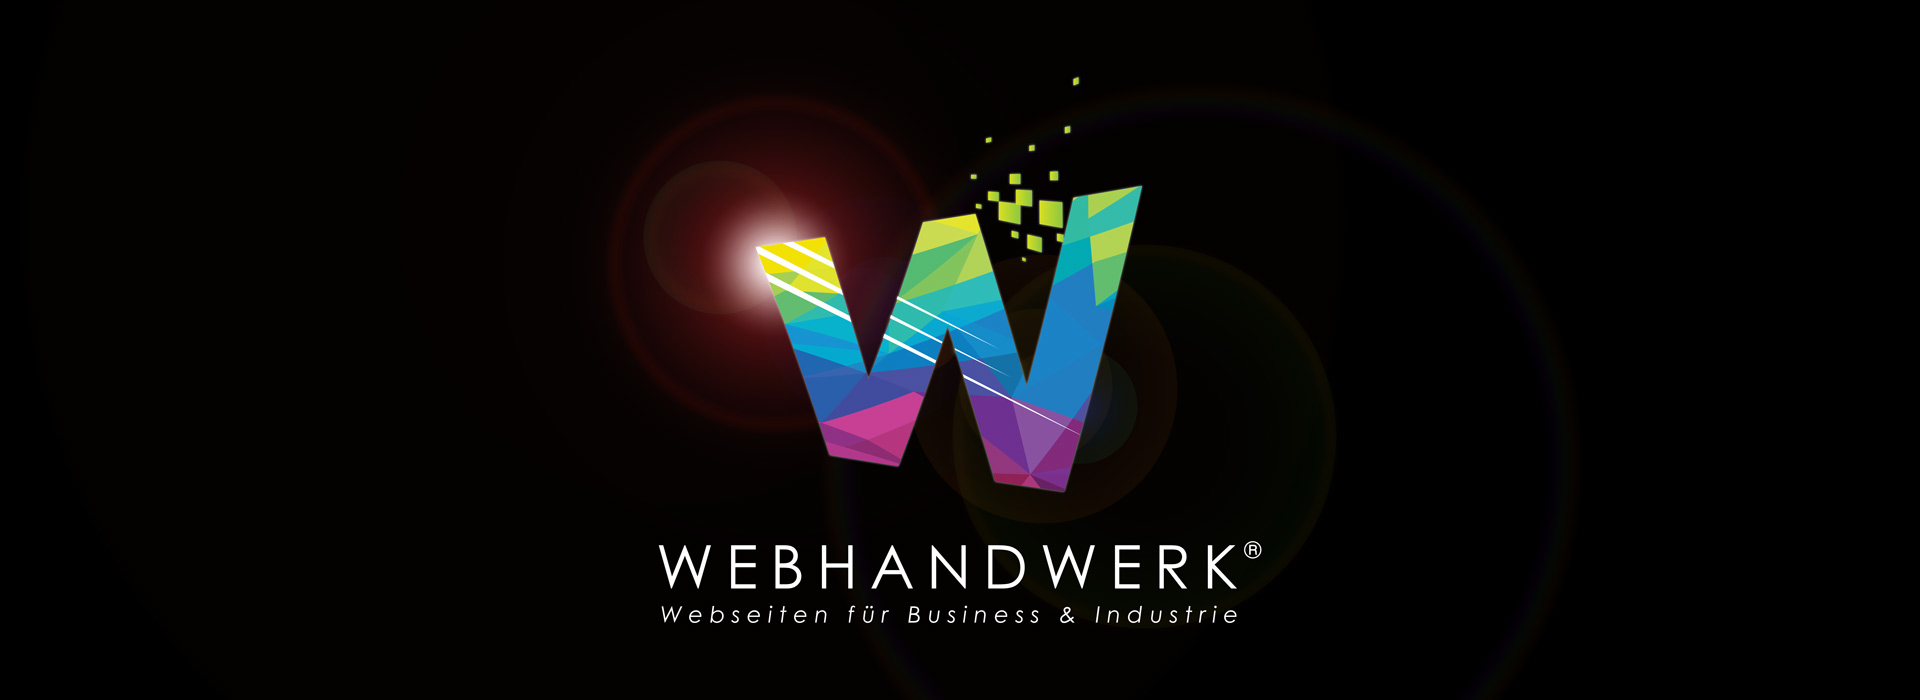 (c) Webhandwerk.de